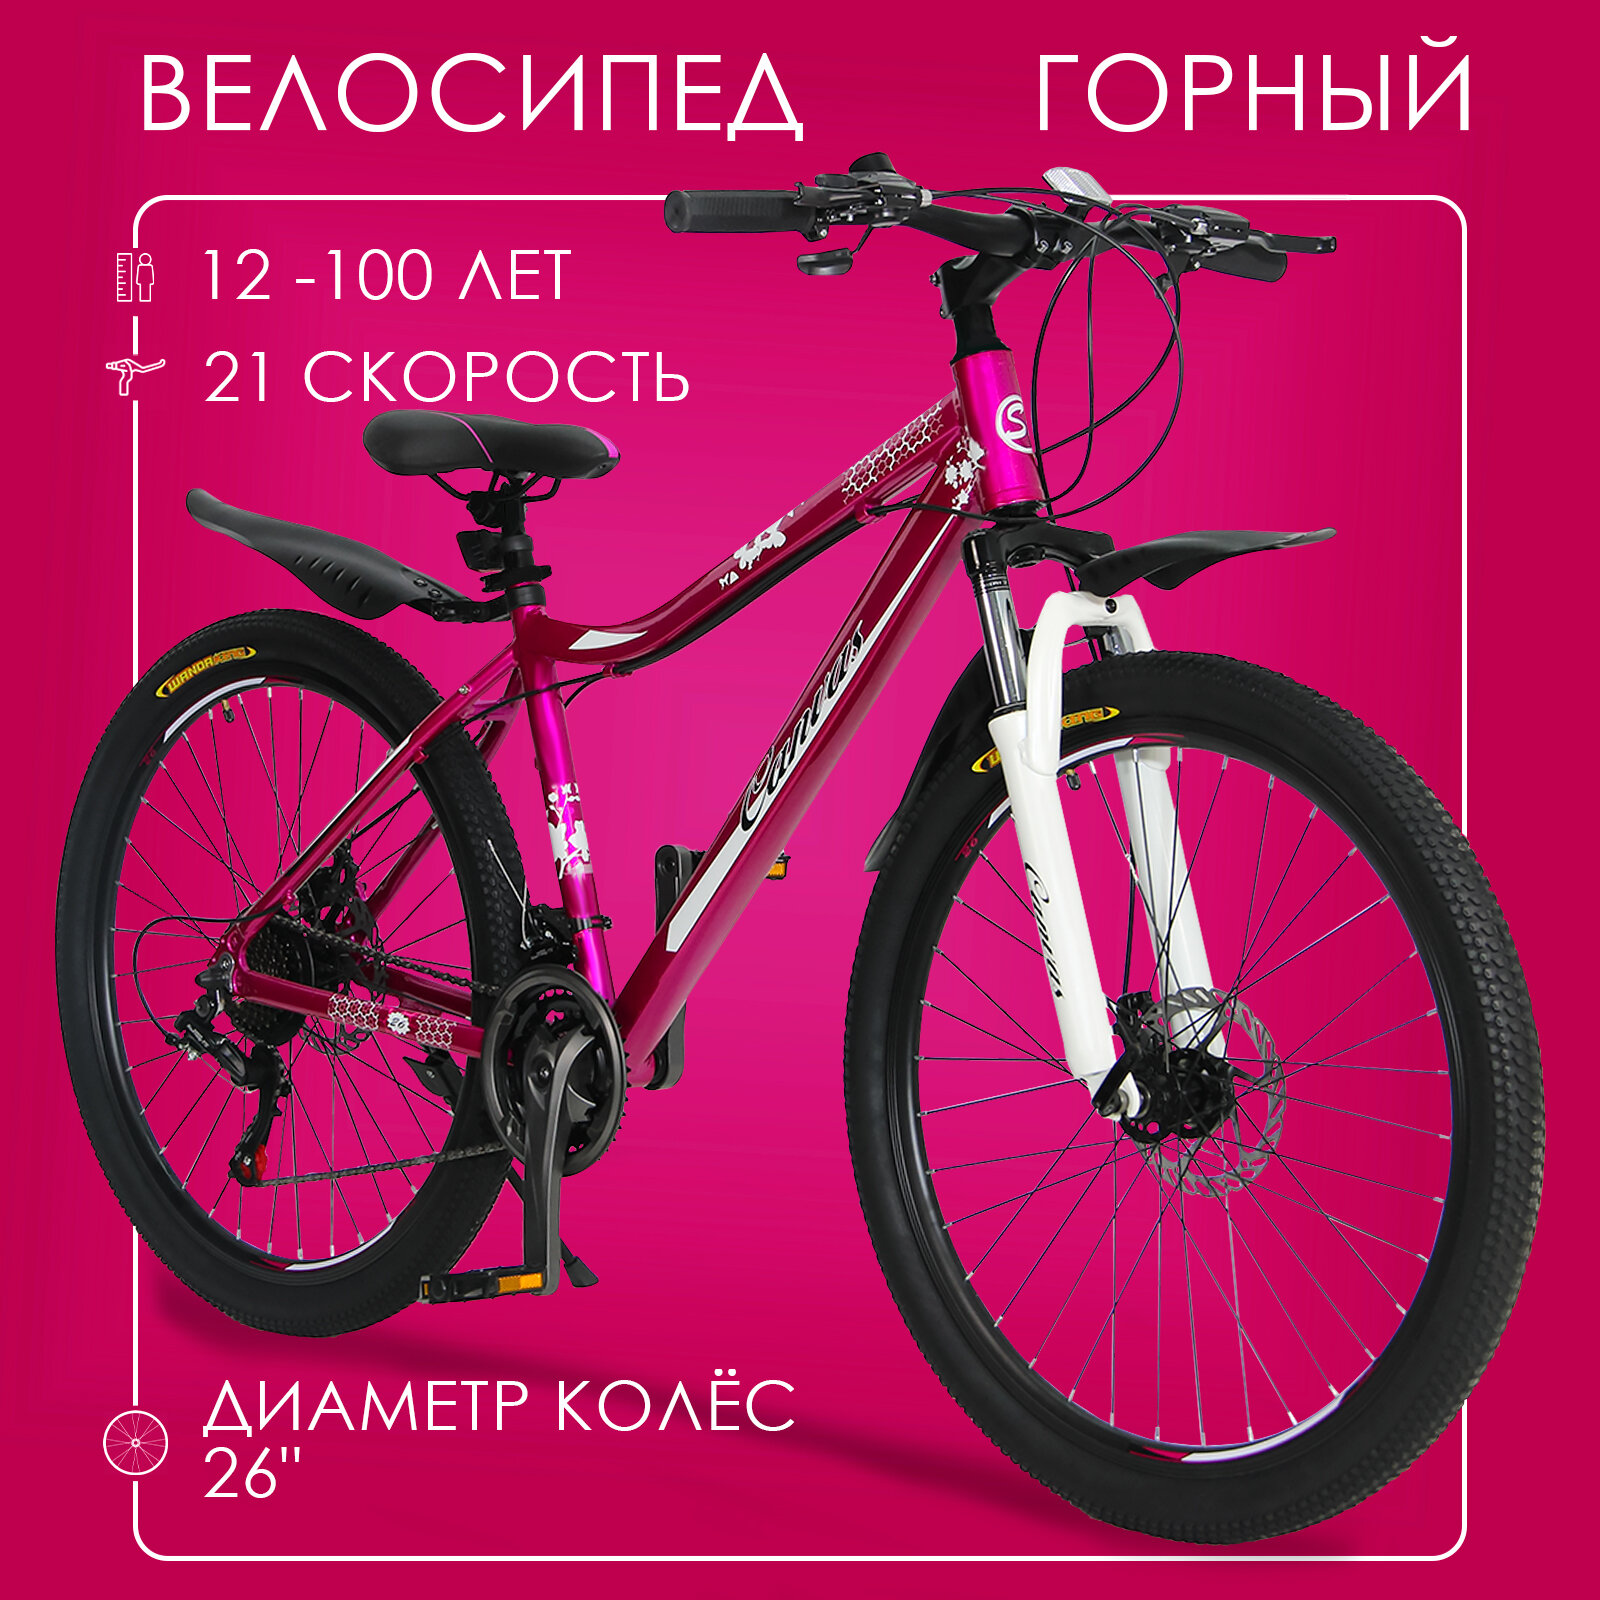 Горный велосипед скоростной Canvas 26" бордовый, от 12 лет, 21 скорость (Shimano tourney)